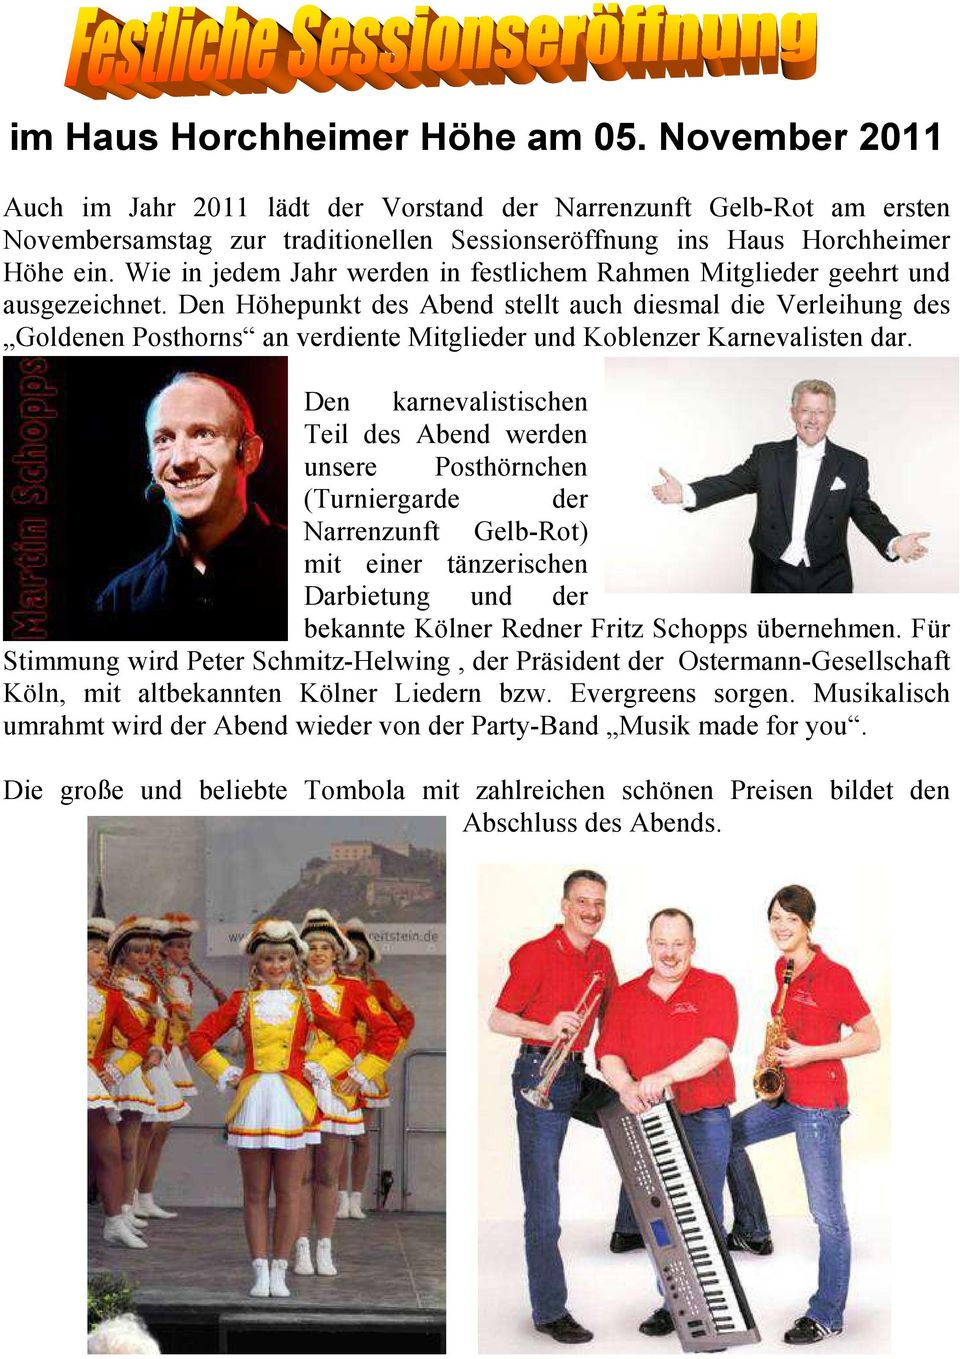 Den Höhepunkt des Abend stellt auch diesmal die Verleihung des Goldenen Posthorns an verdiente Mitglieder und Koblenzer Karnevalisten dar.